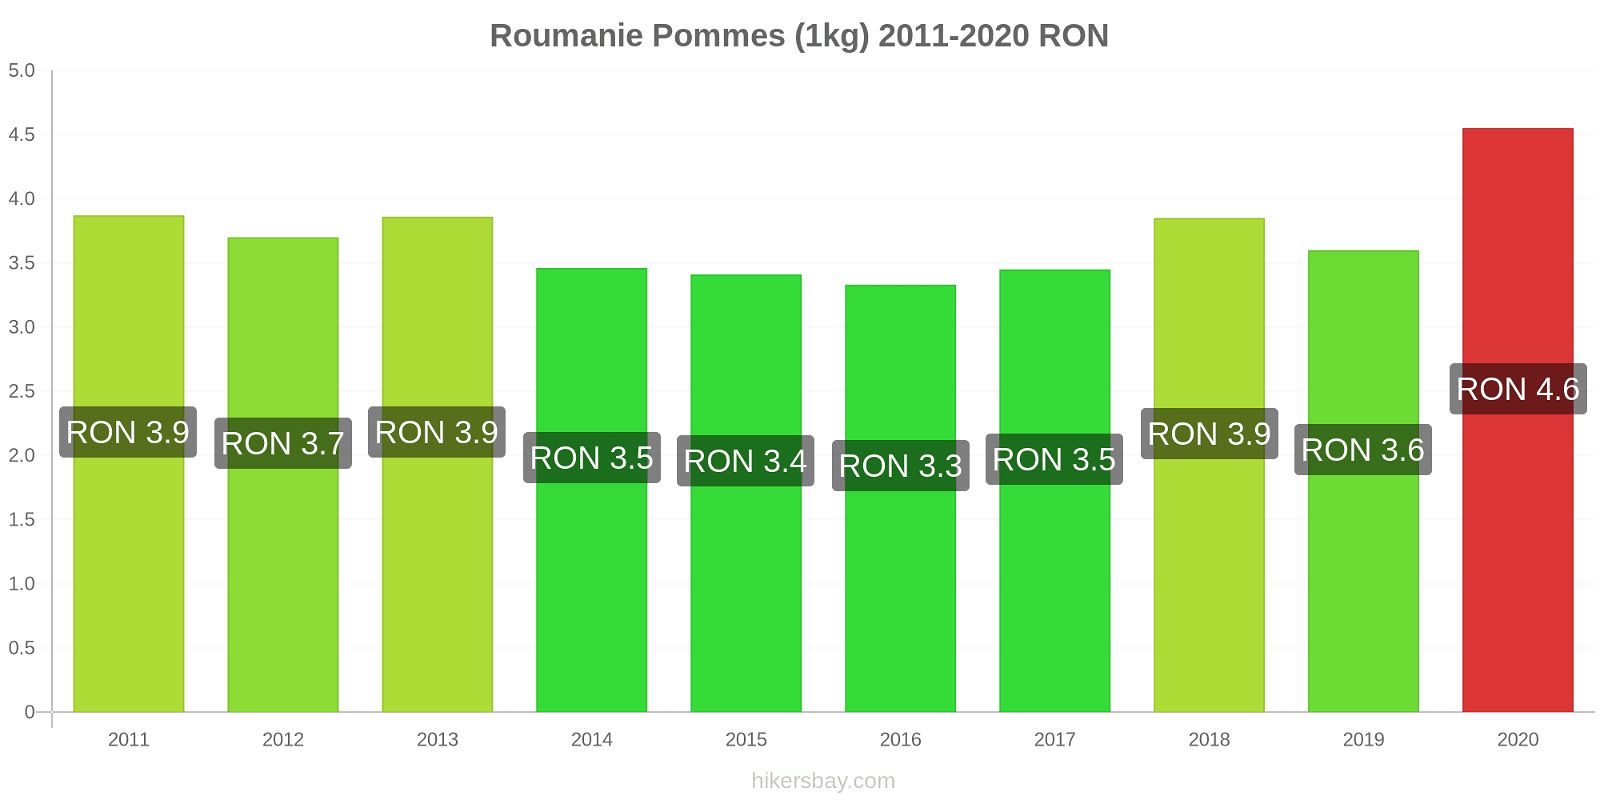 Roumanie changements de prix Pommes (1kg) hikersbay.com